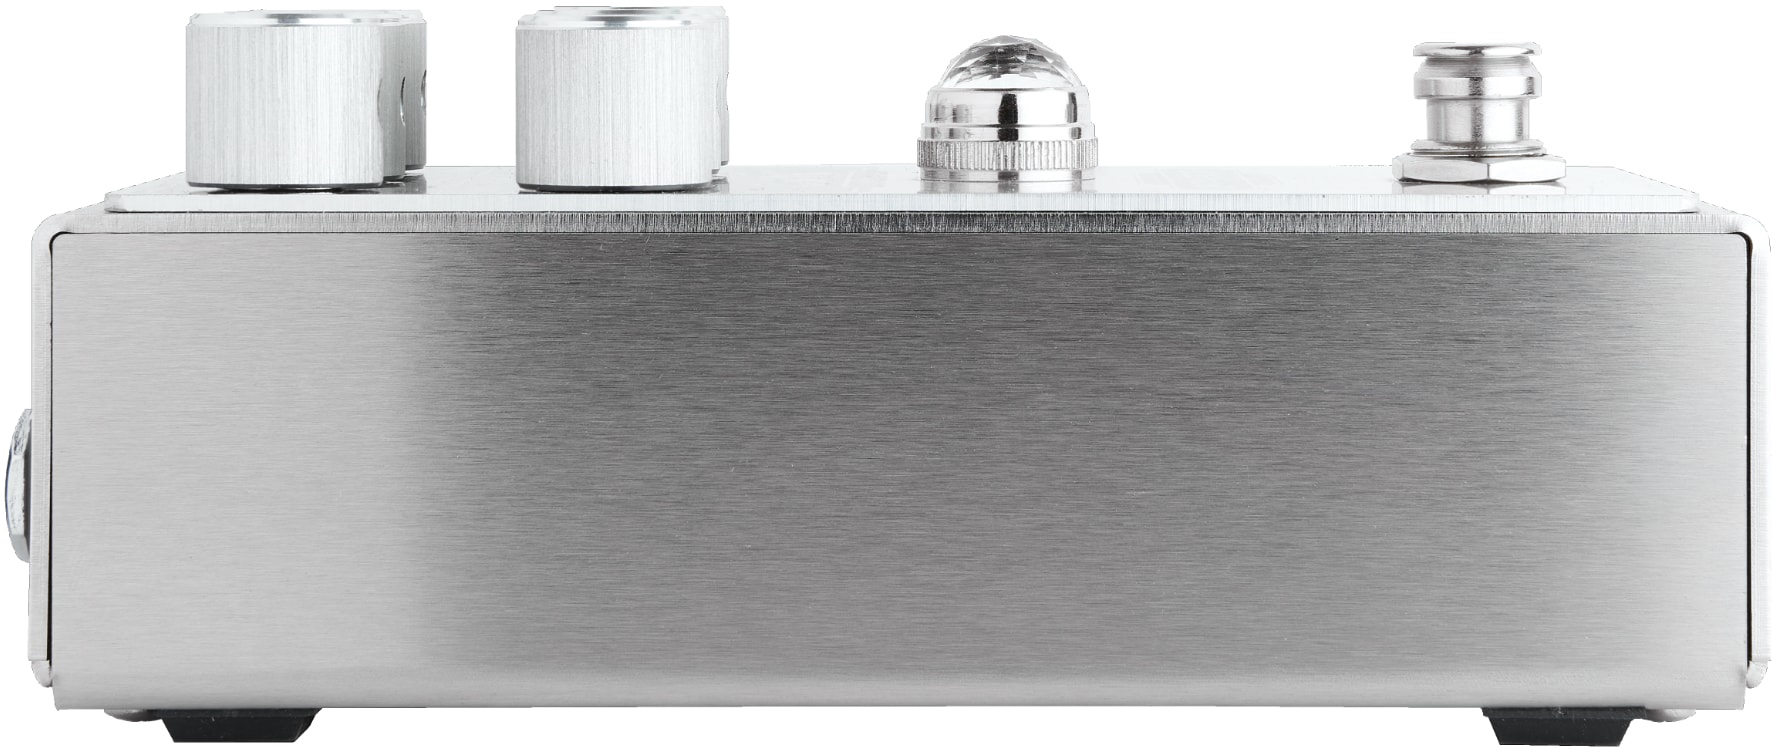 Origin Effects Sliderig Compact Deluxe Mk2 Laser Engraved Ltd - Compressor, sustain & noise gate effect pedal - Variation 1